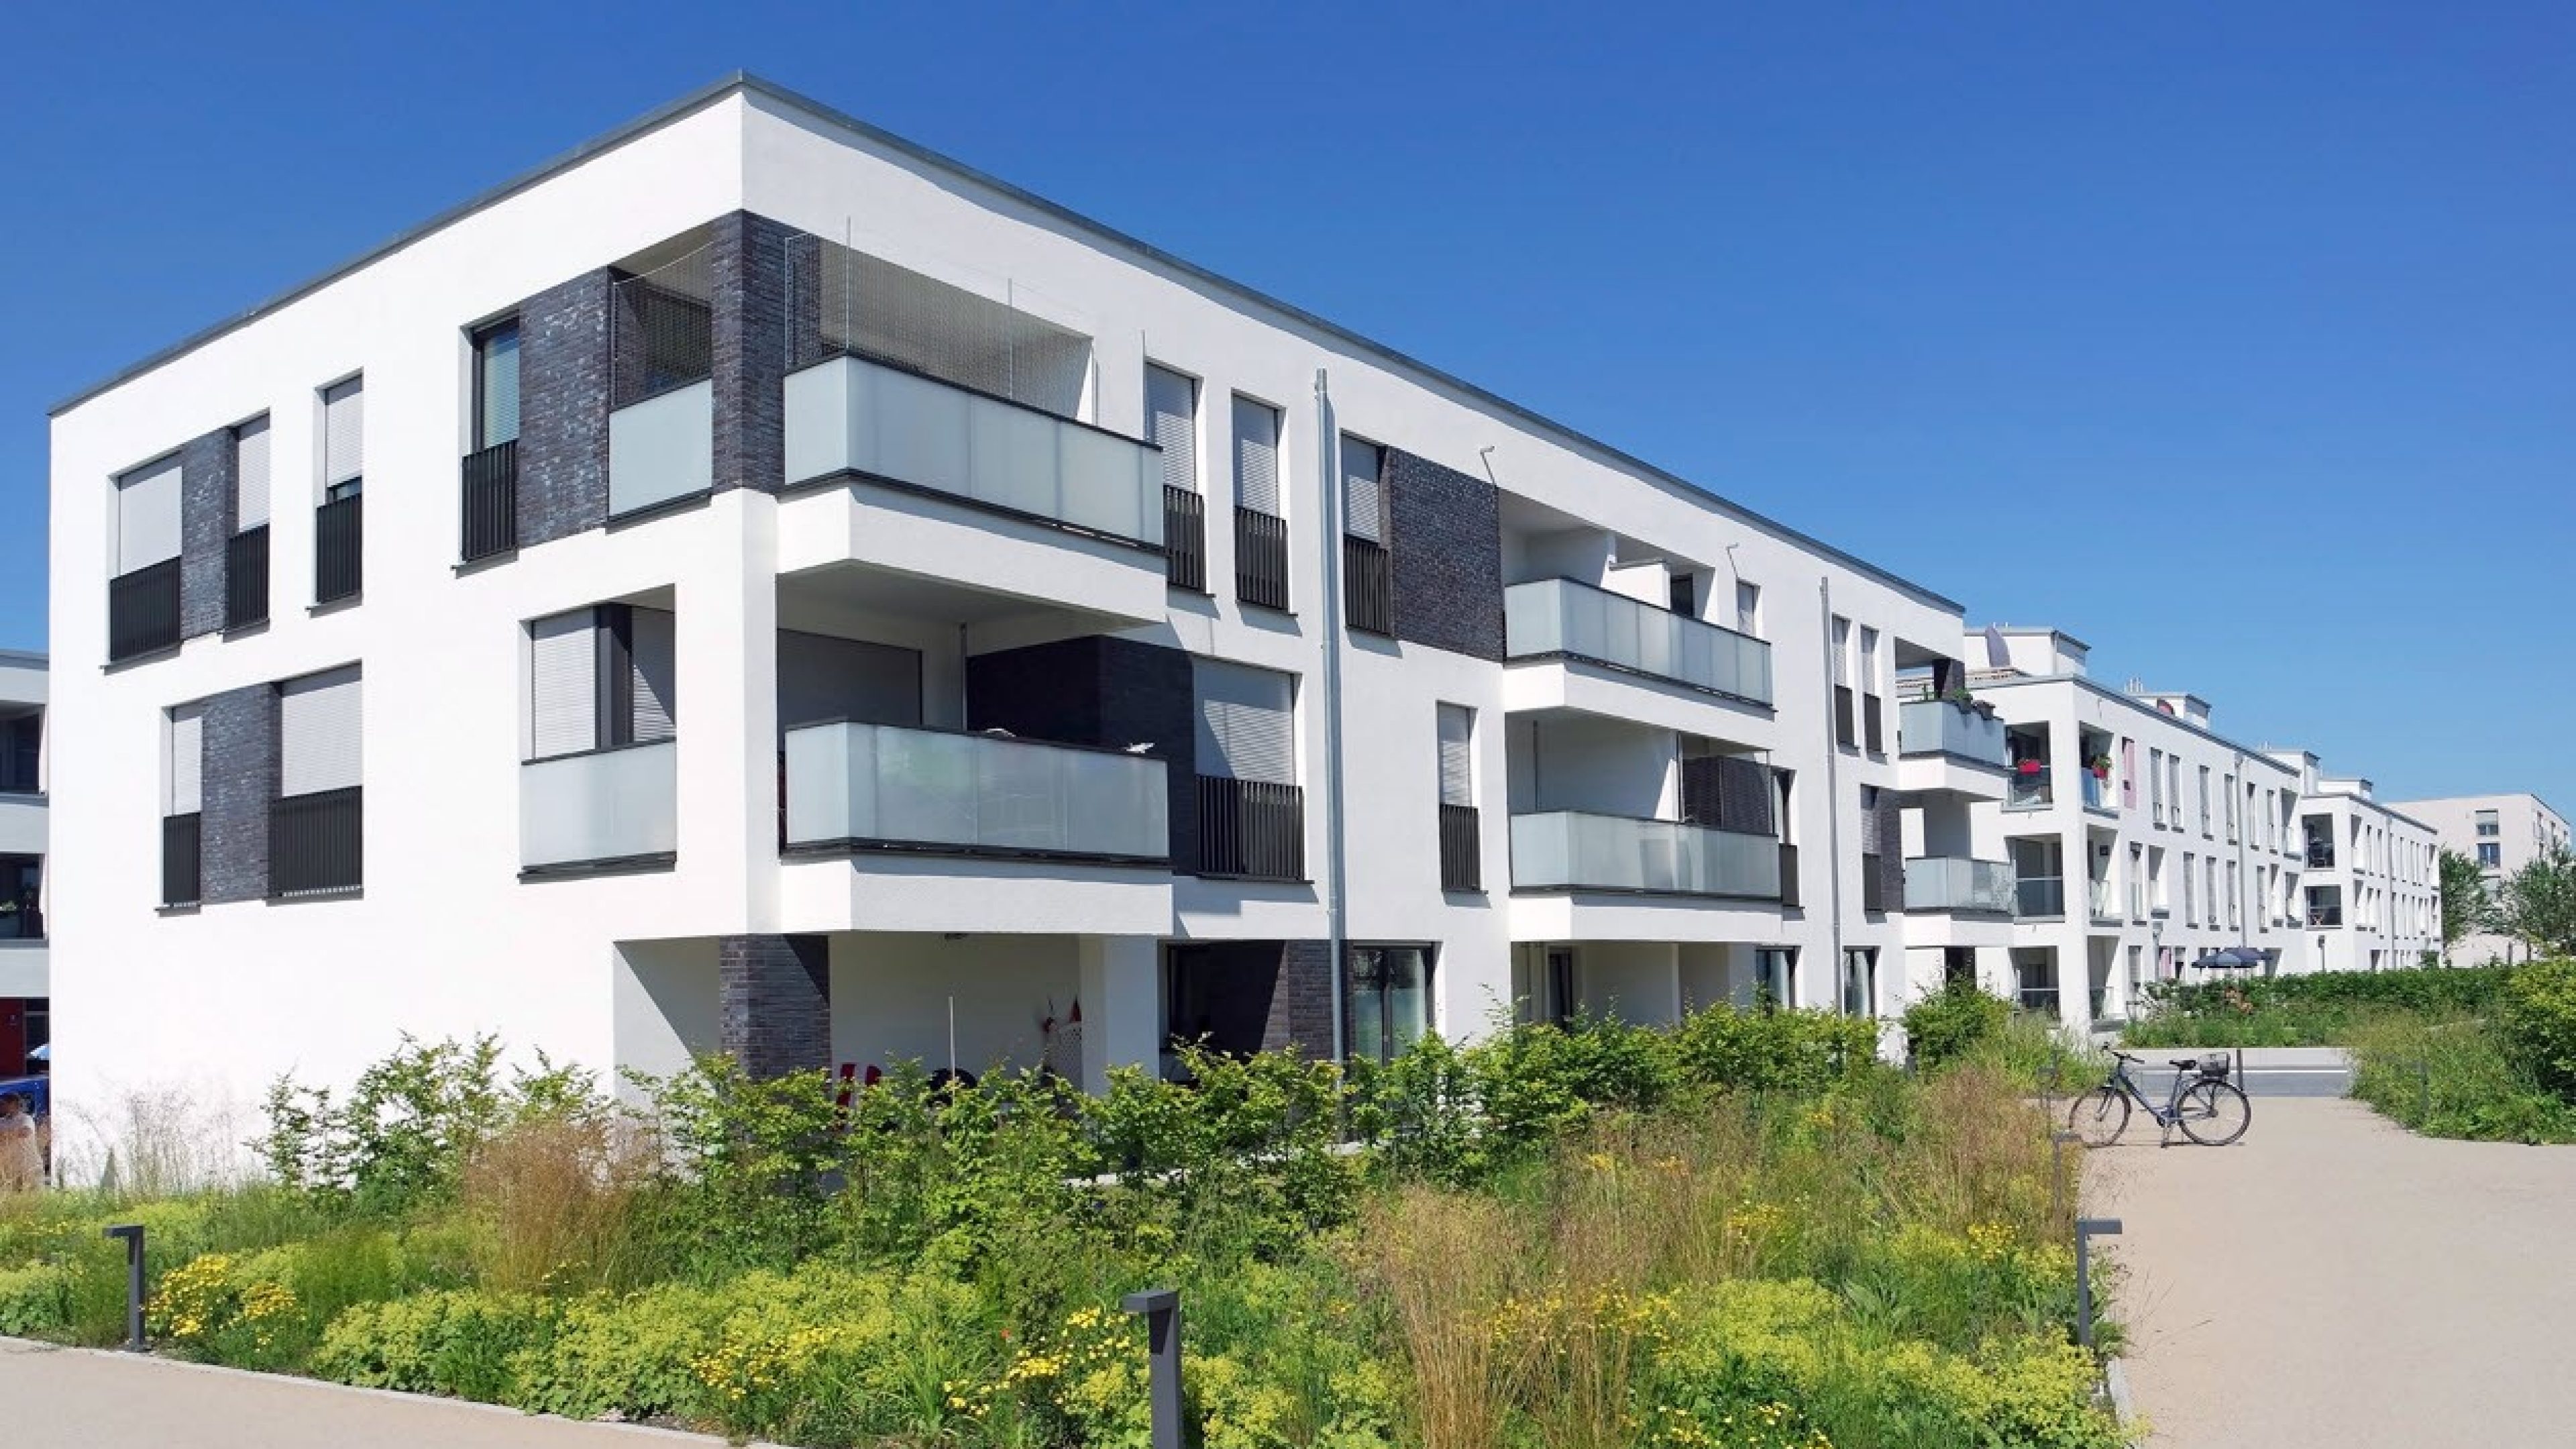 Immeubles locatifs modernes entourés d’espaces verts et de ciel bleu. 